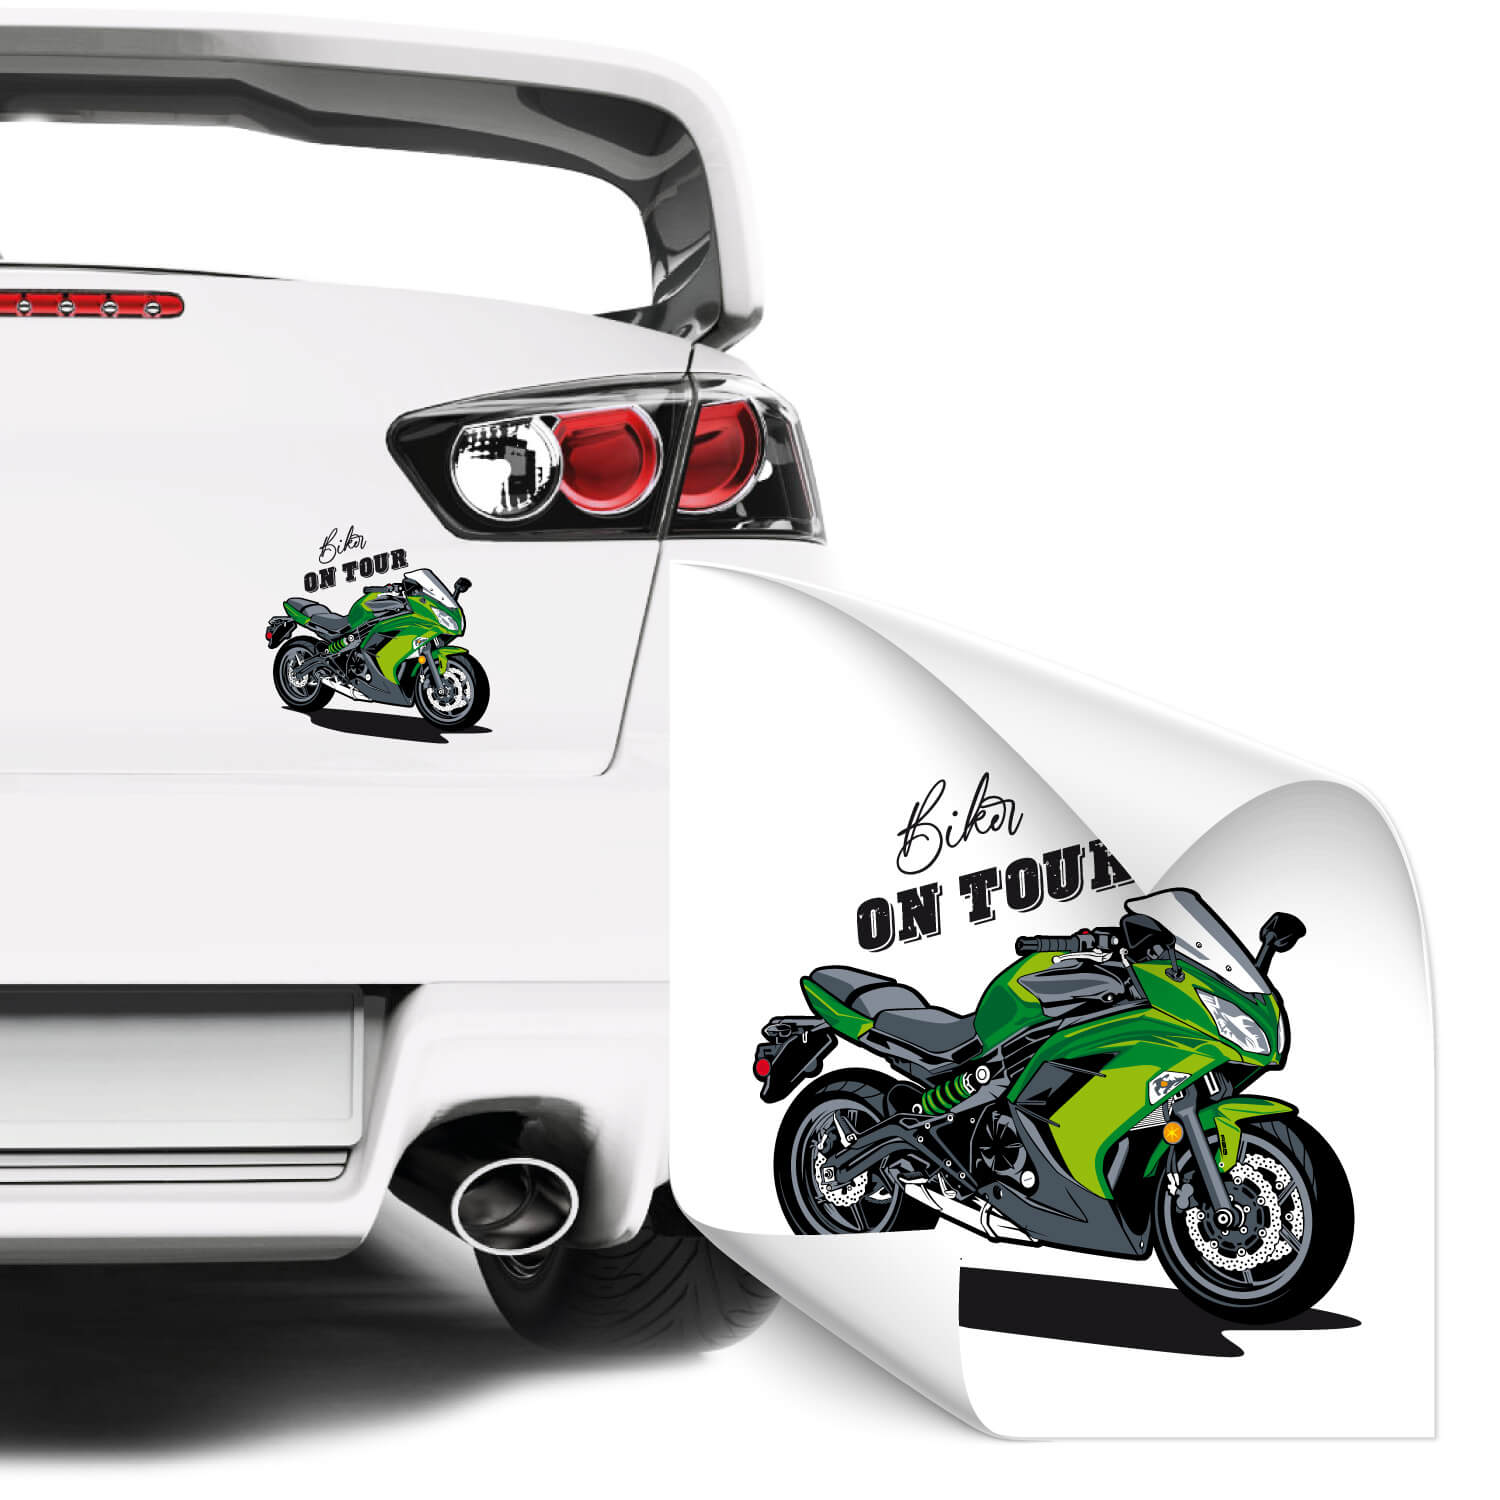 Biker on tour Heckaufkleber Motorcycling Sticker von Klebe-X / style4Bike  jetzt Online bestellen!